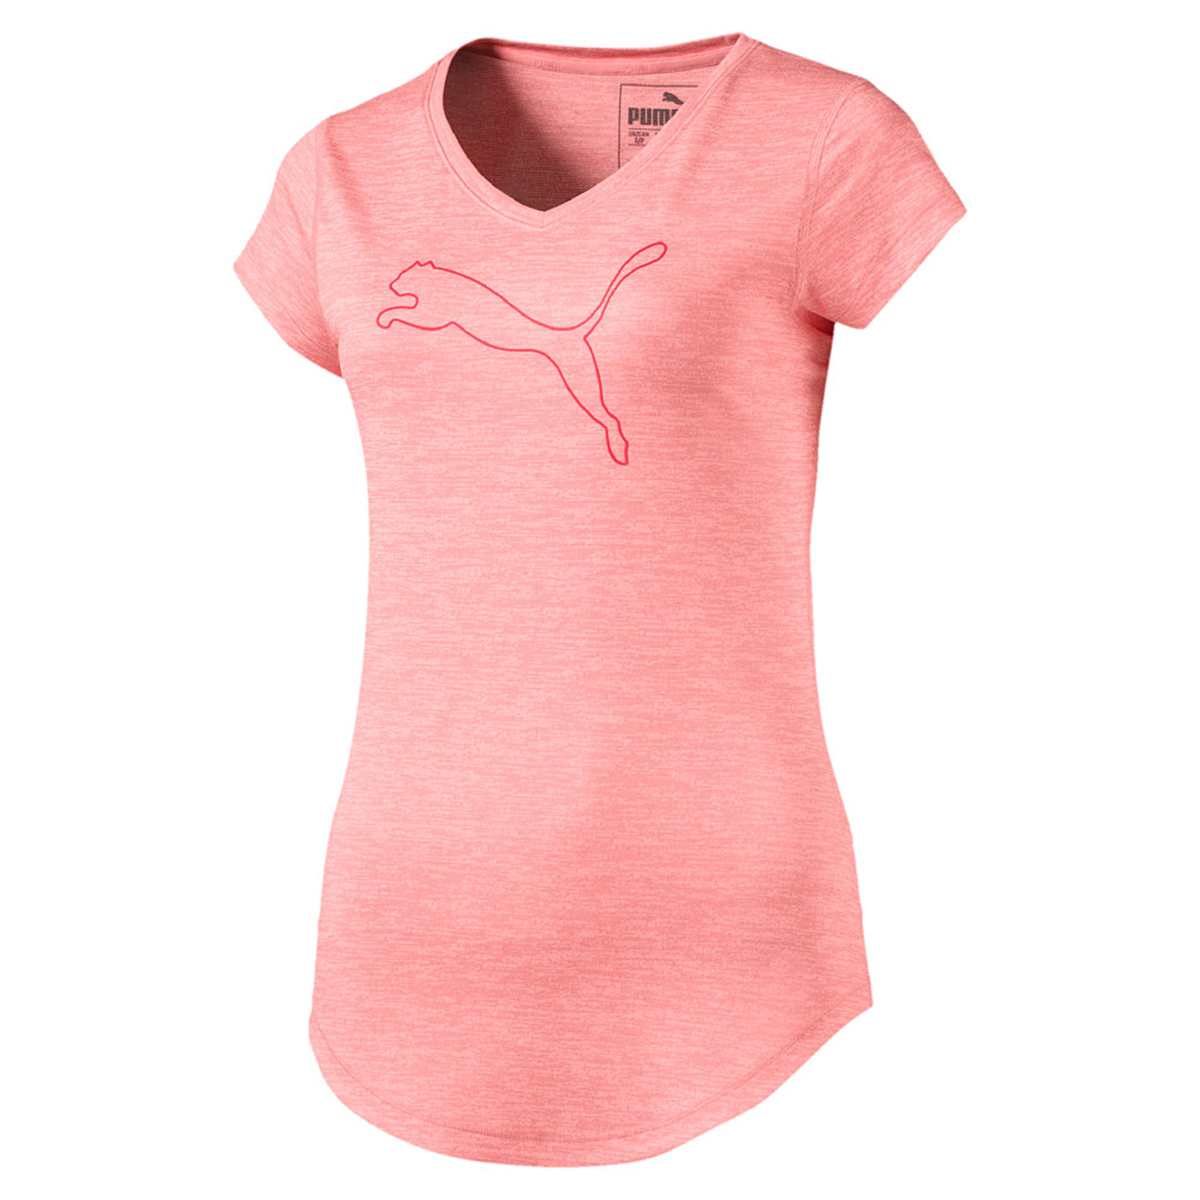 PUMA Damen Heather Cat Tee T-Shirt Trainingsshirt Laufshirt 516410 06 Soft Fluo Peach